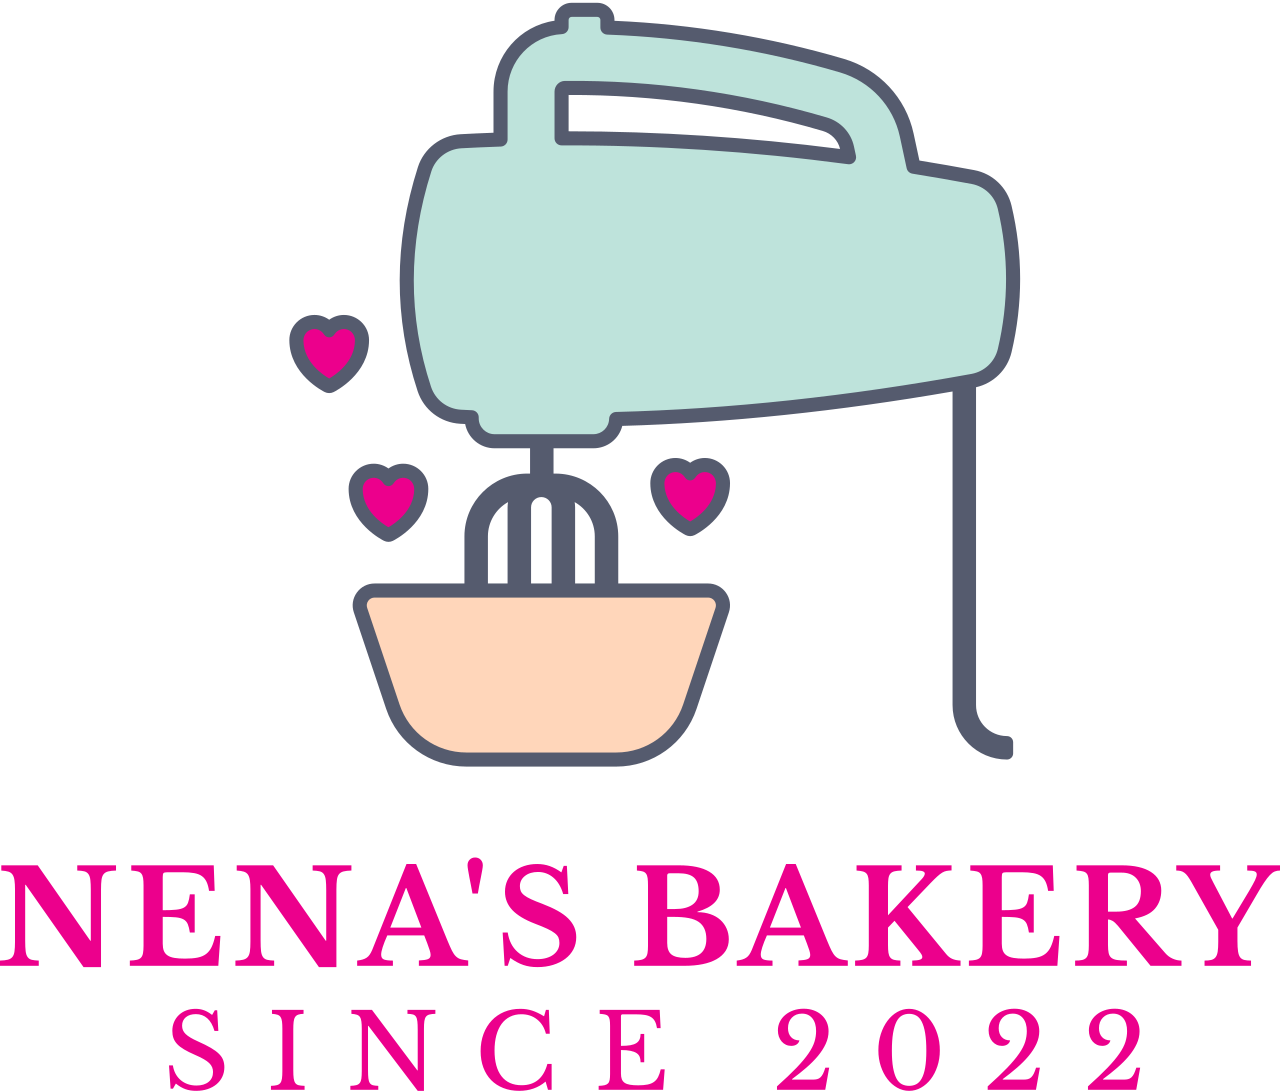 NENA'S BAKERY 's web page